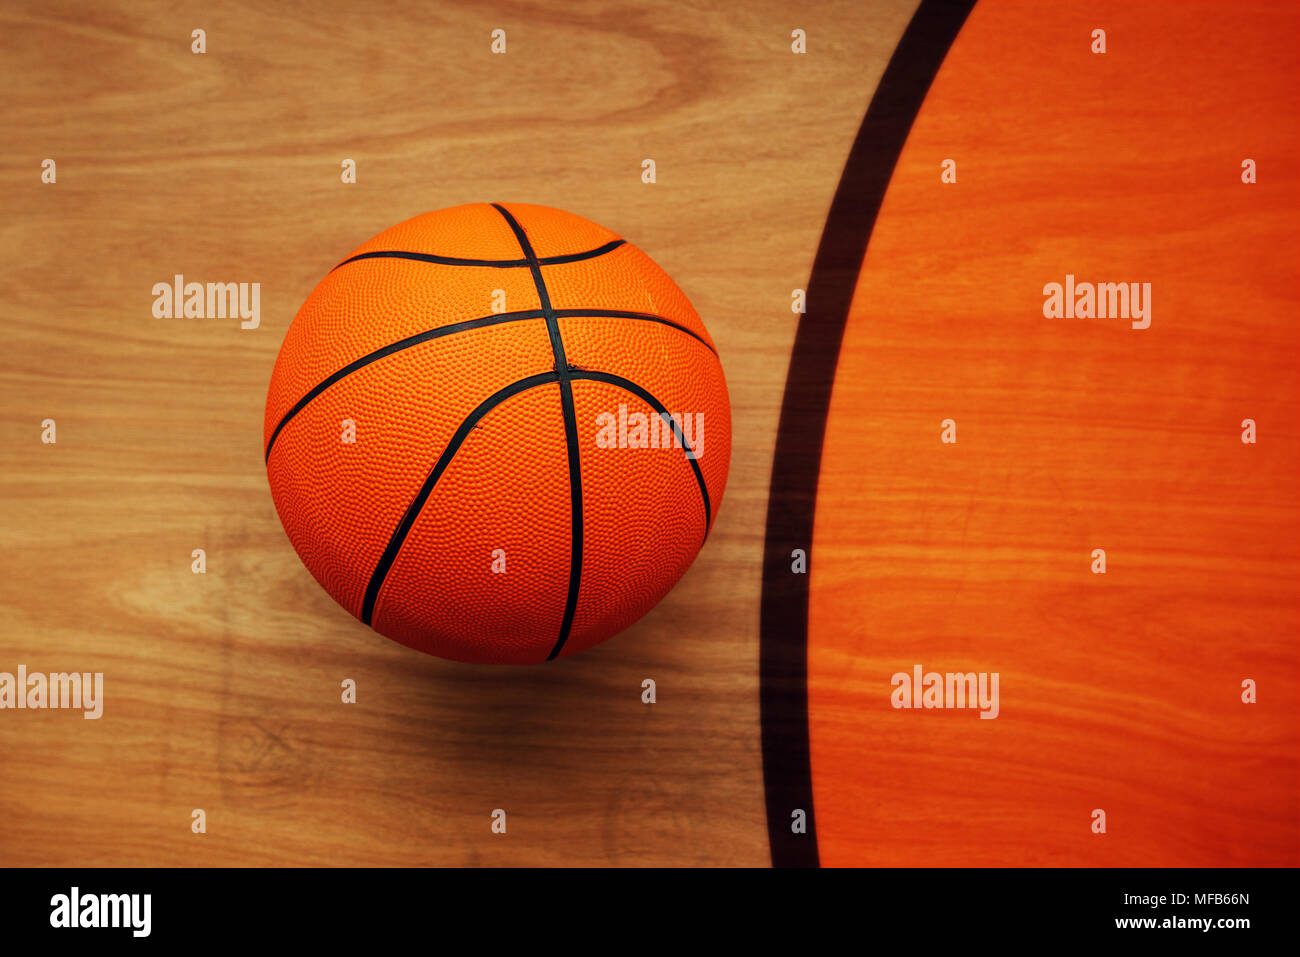 Il basket ball posa su pavimenti in legno corte piano, vista dall'alto Foto Stock